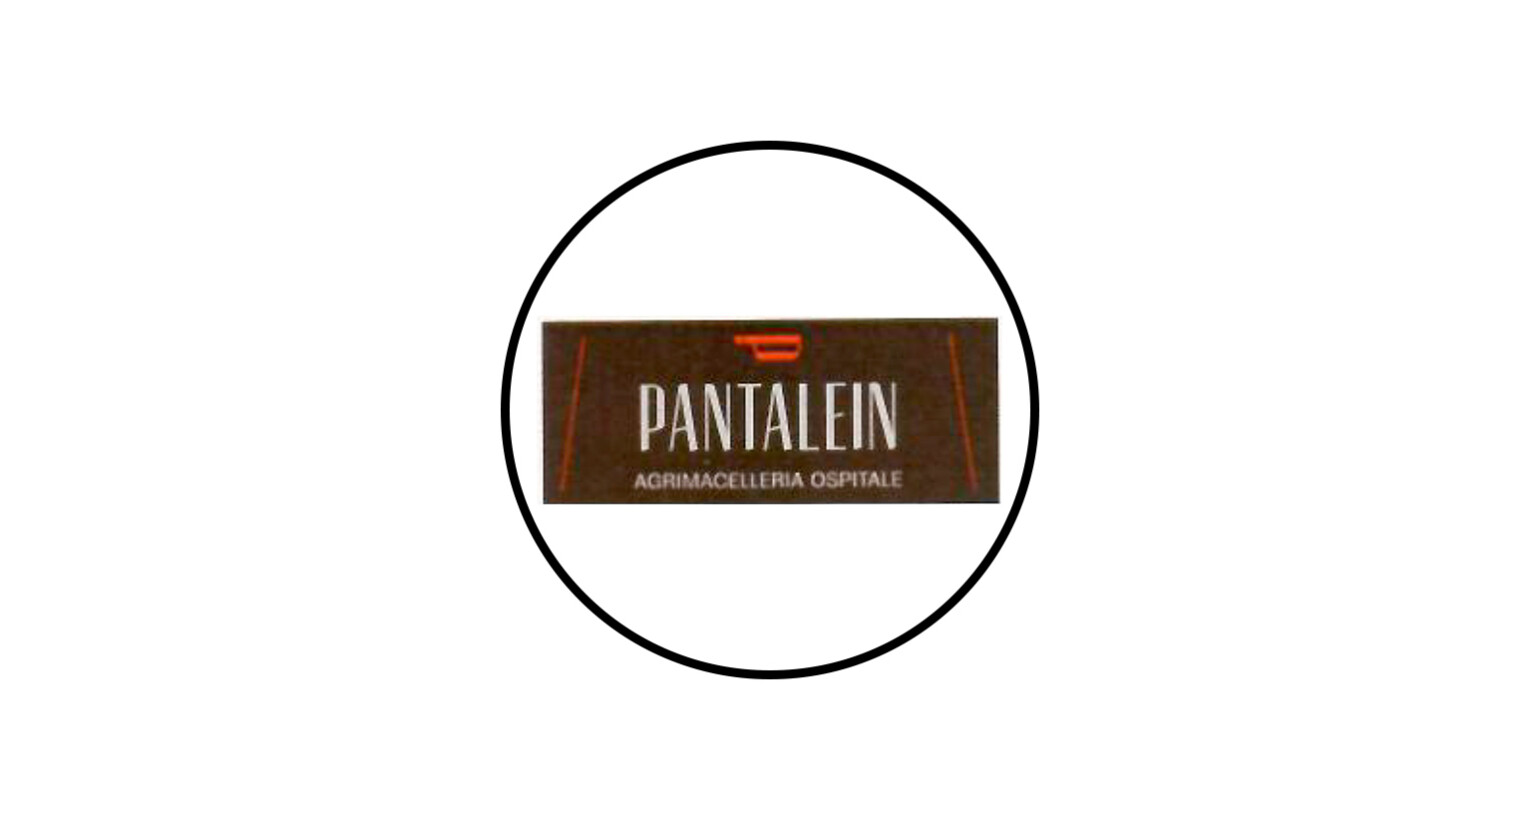 Degustazione presso azienda Pantalein